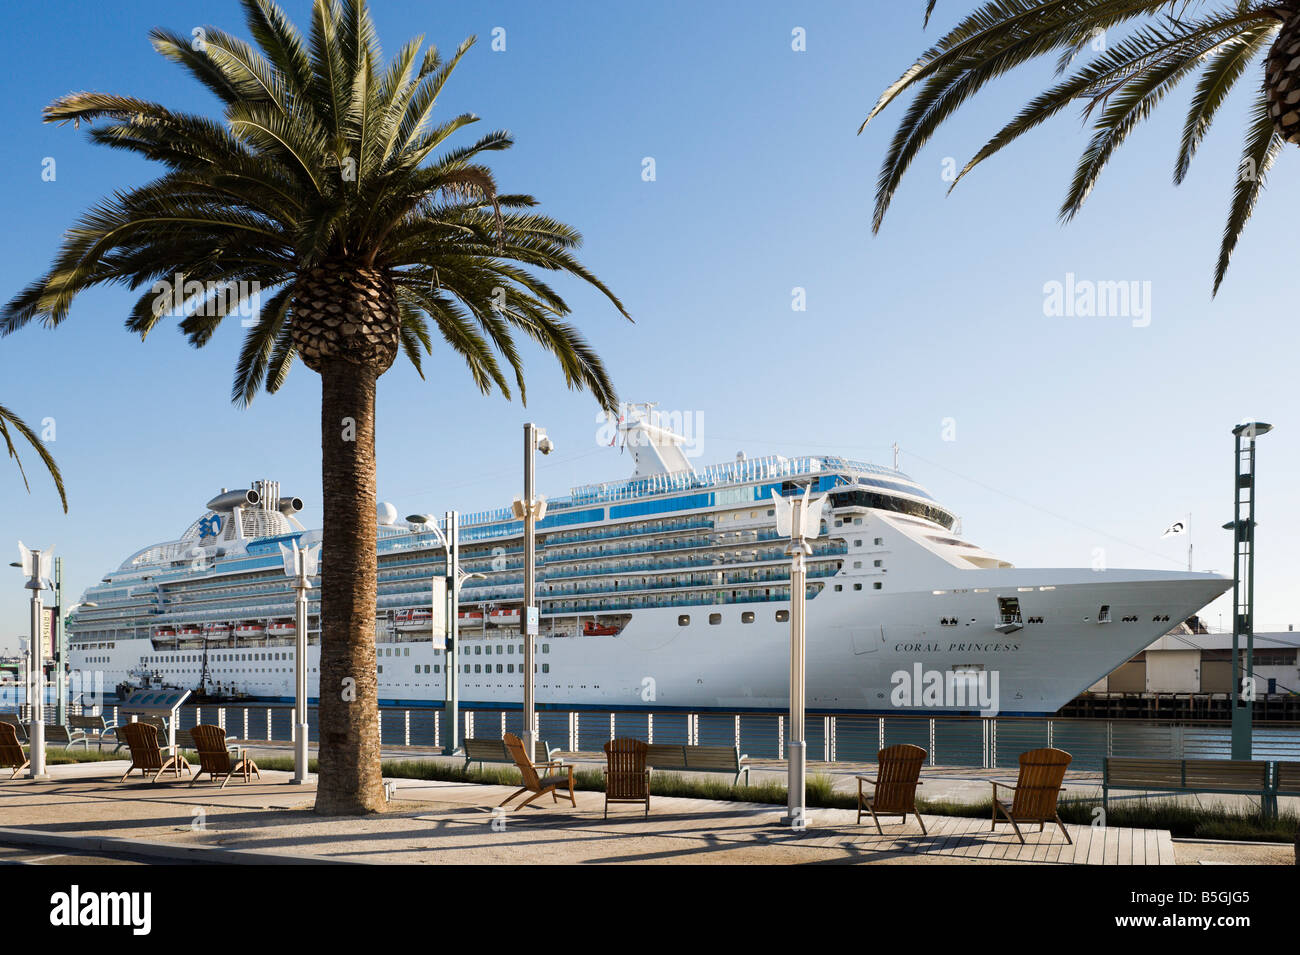 El crucero Coral Princess atracó en la terminal de cruceros en el puerto de Los Ángeles, San Pedro, Los Angeles, California Foto de stock